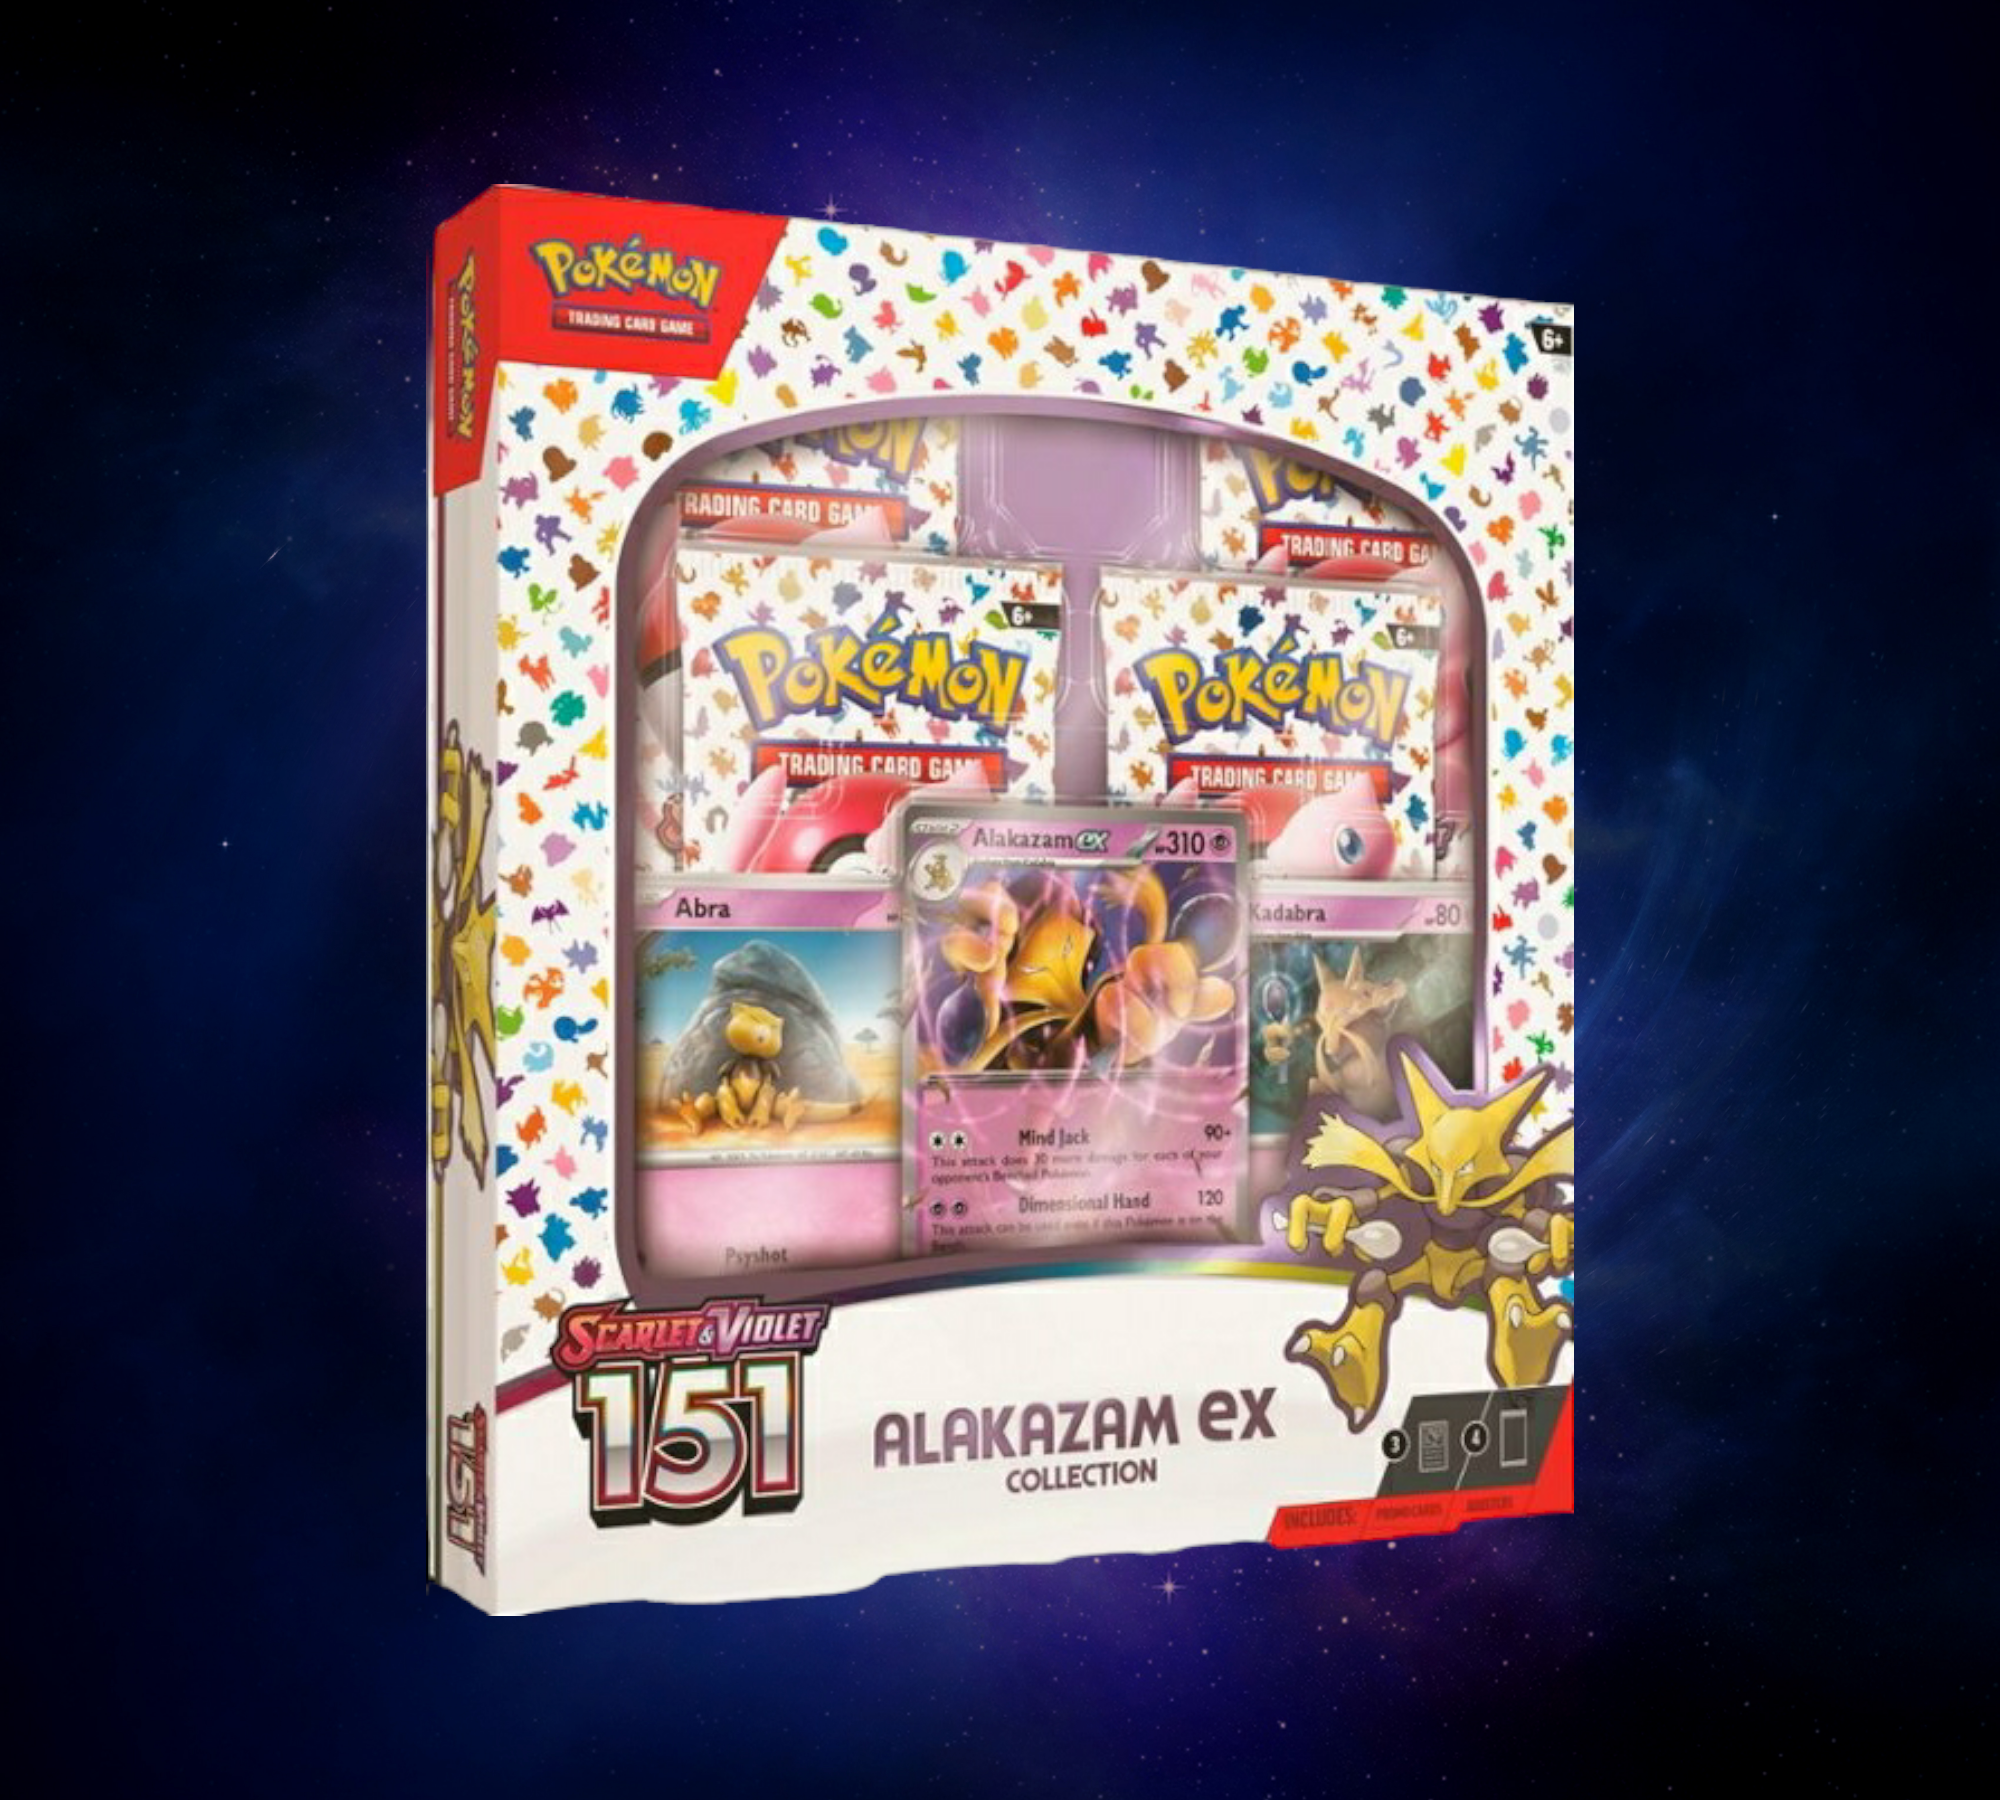 Pokemon 151 Collection Alakazam EX Box – Treehouse Toys